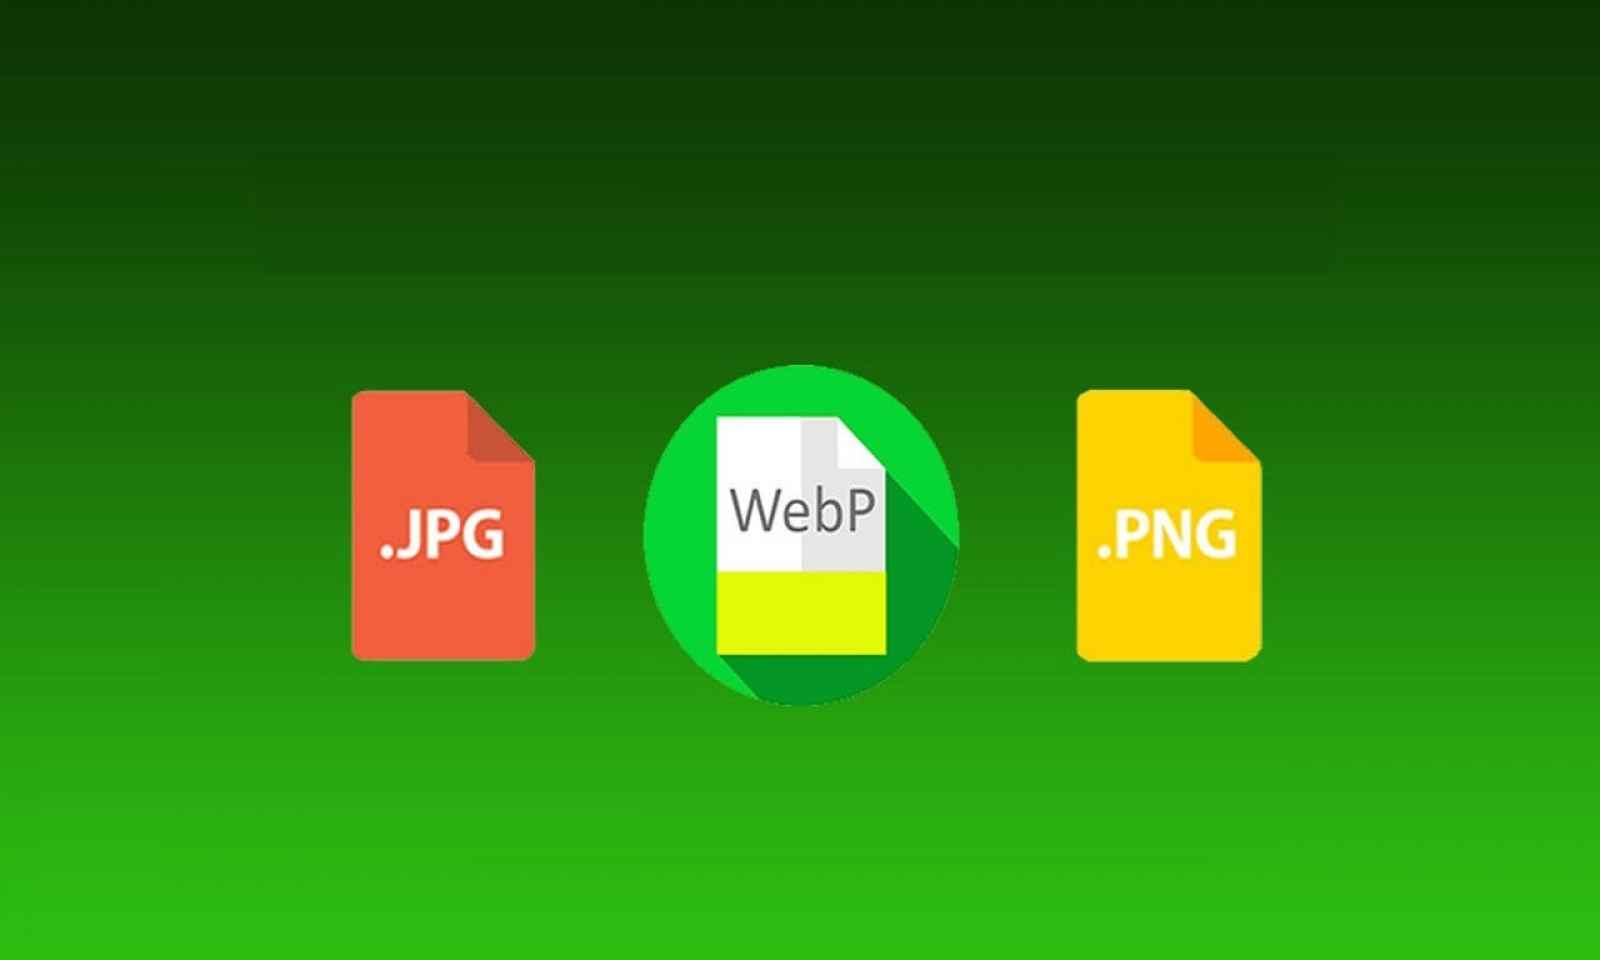 Webp in png. Формат webp. Webp изображения. Изображение в формате webp. Конвертер webp.